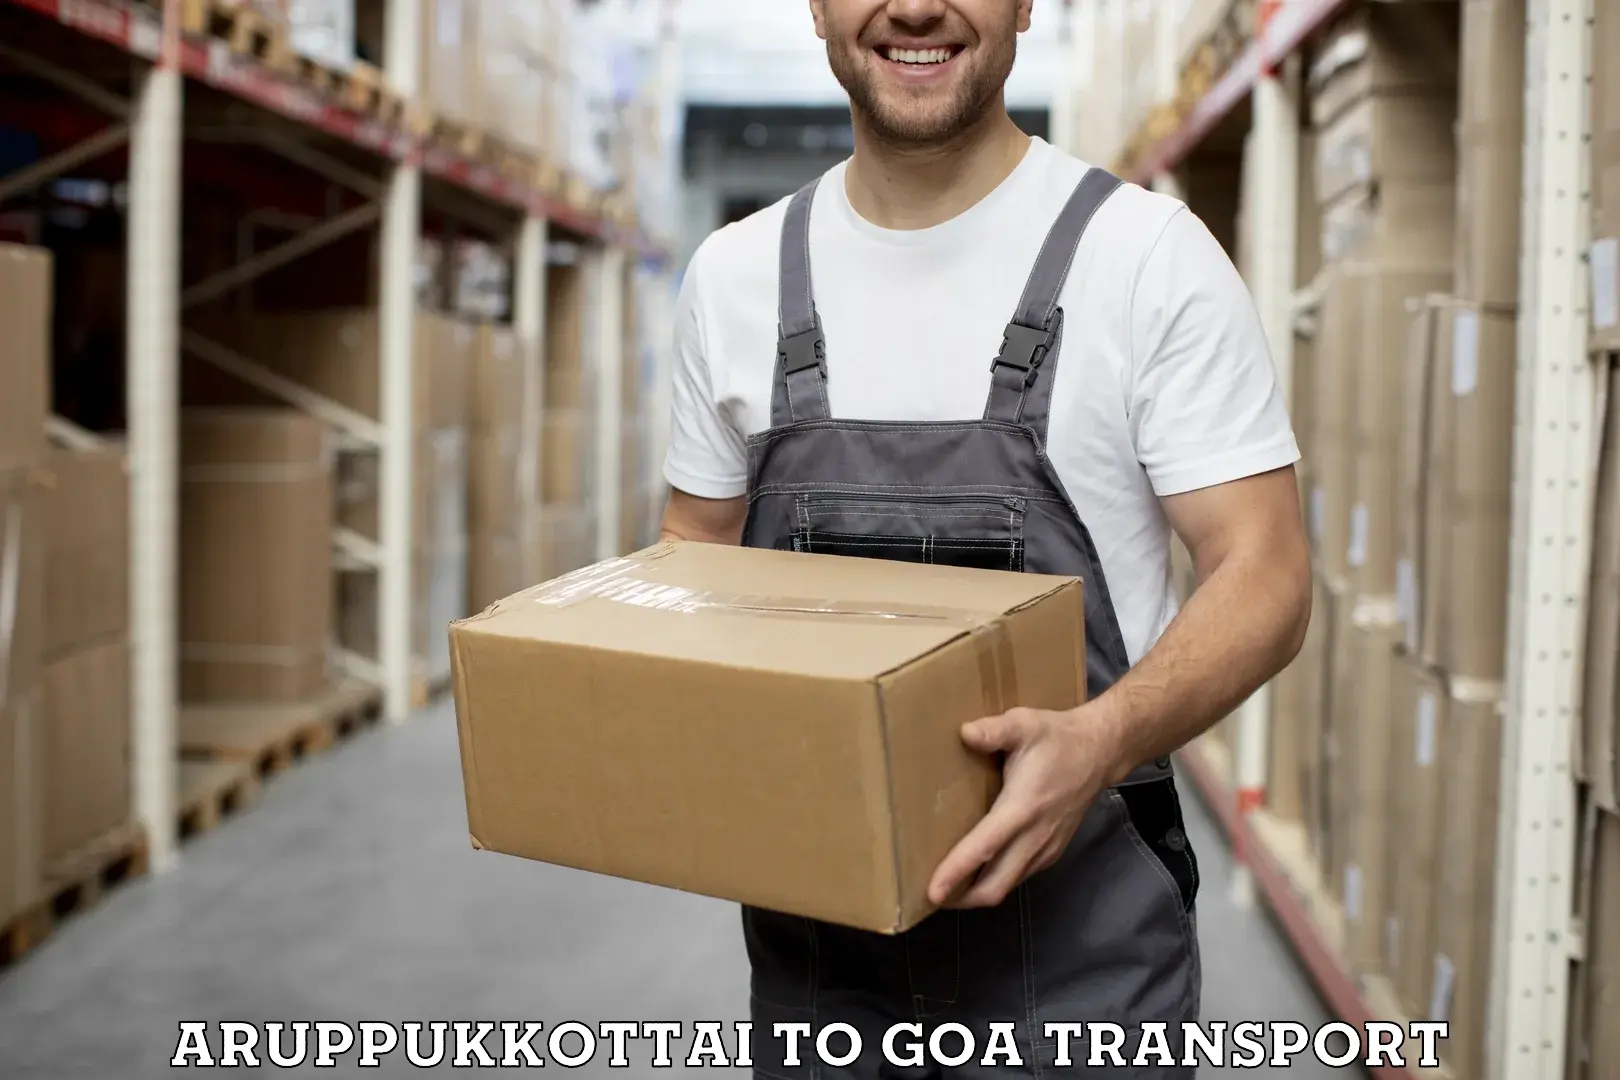 Two wheeler parcel service Aruppukkottai to South Goa